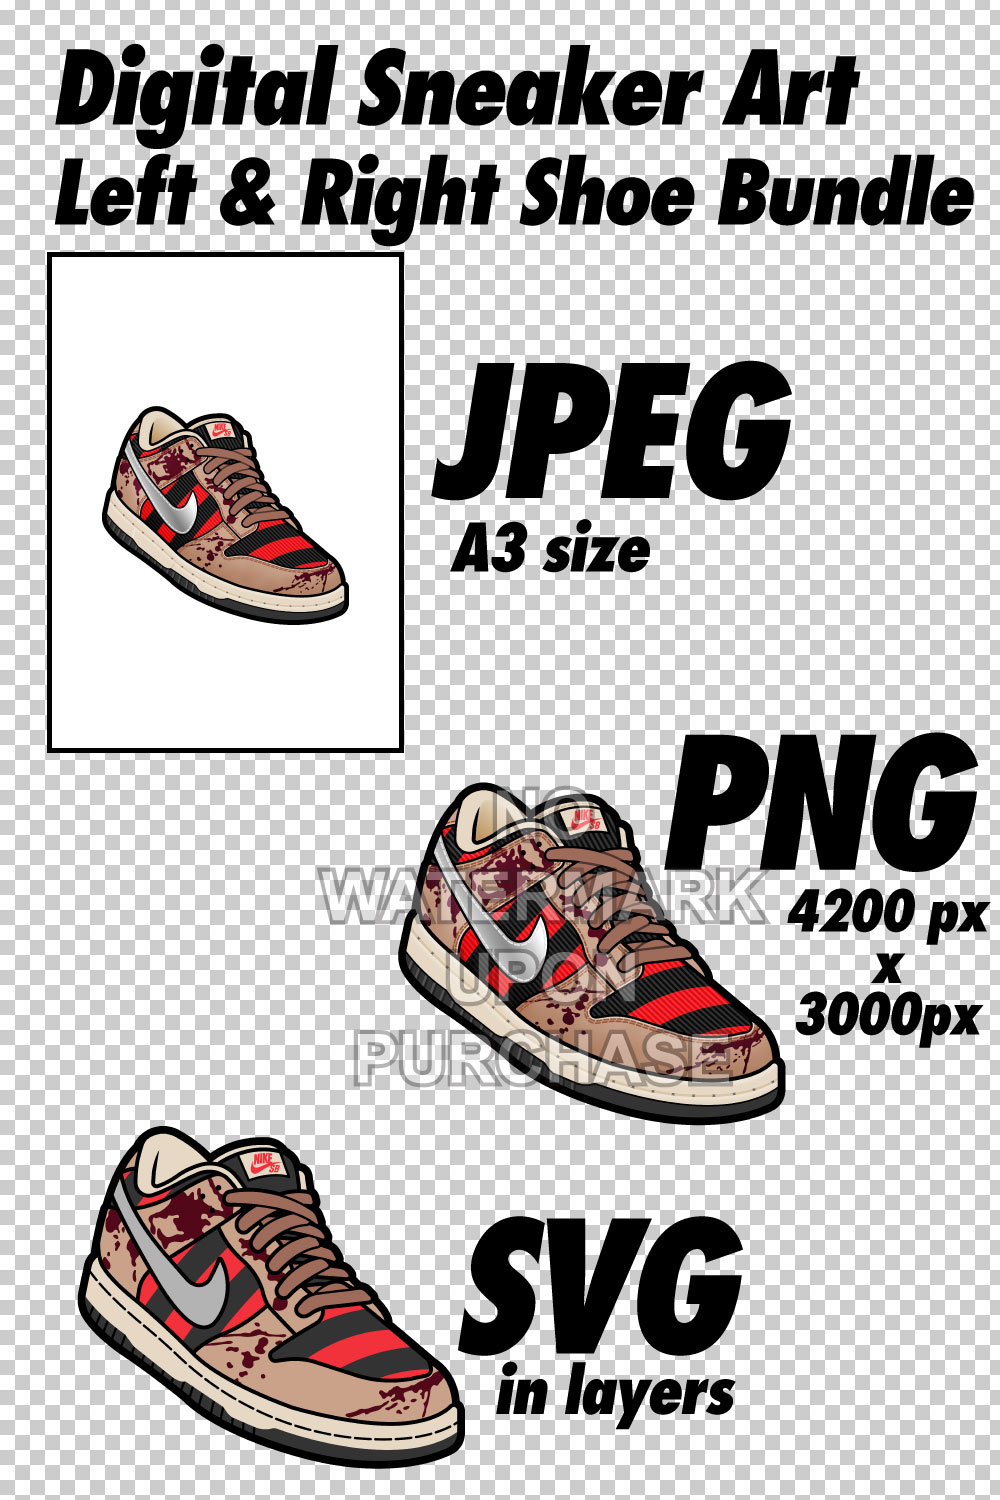 Dunk Low Freddy Krueger JPEG PNG SVG Left & Right bundle Sneaker Art digital download pinterest preview image.